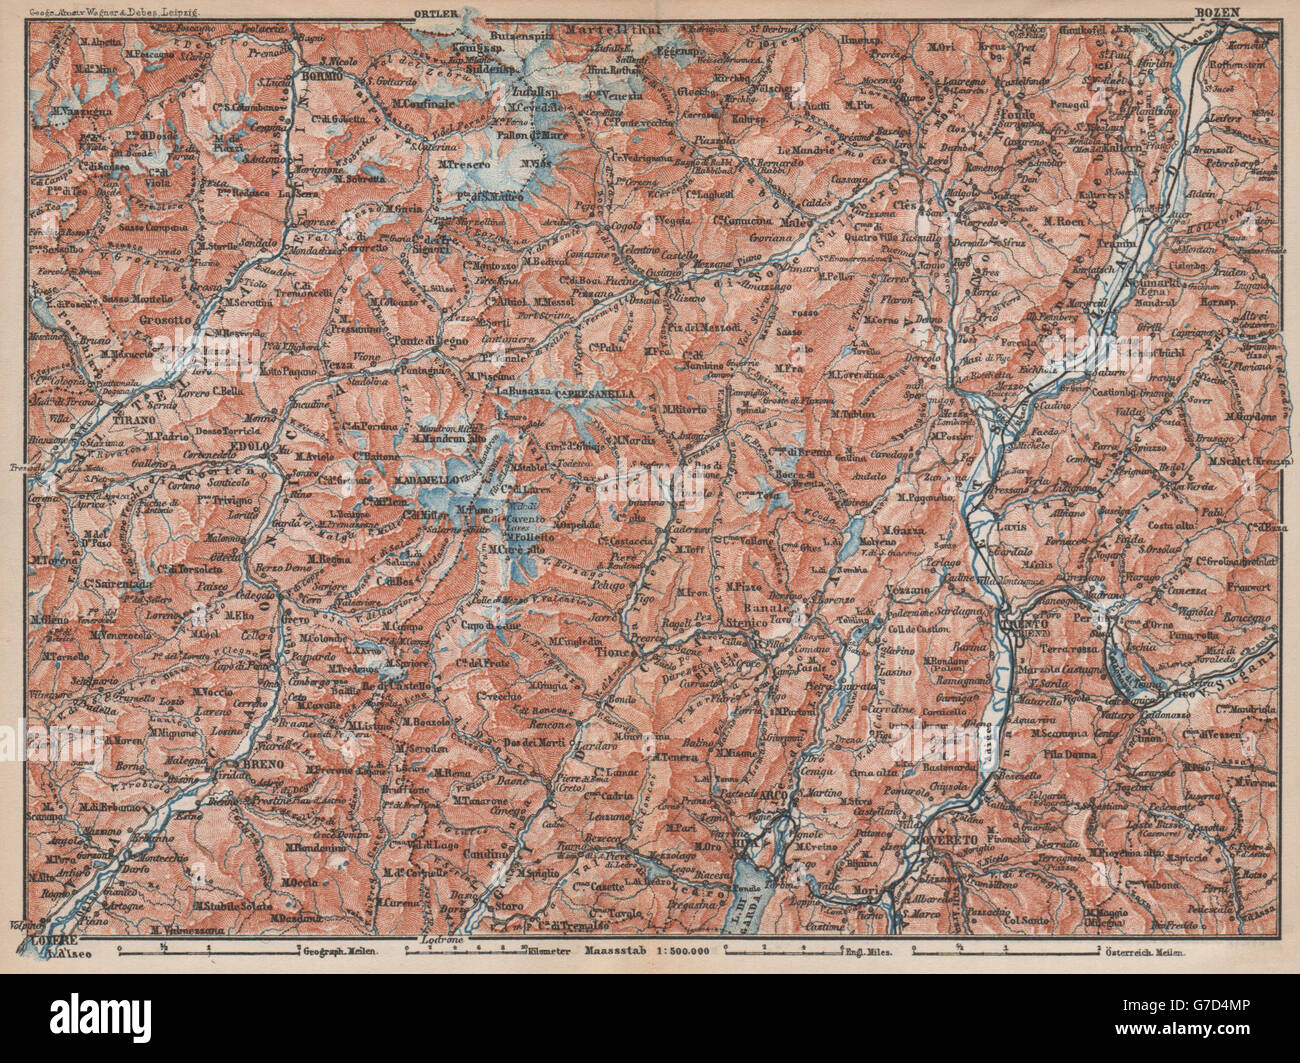 En Trentino Alto Adige. Bolzano Bormio S. Caterina Aprica Campiglio mappa, 1896 Foto de stock